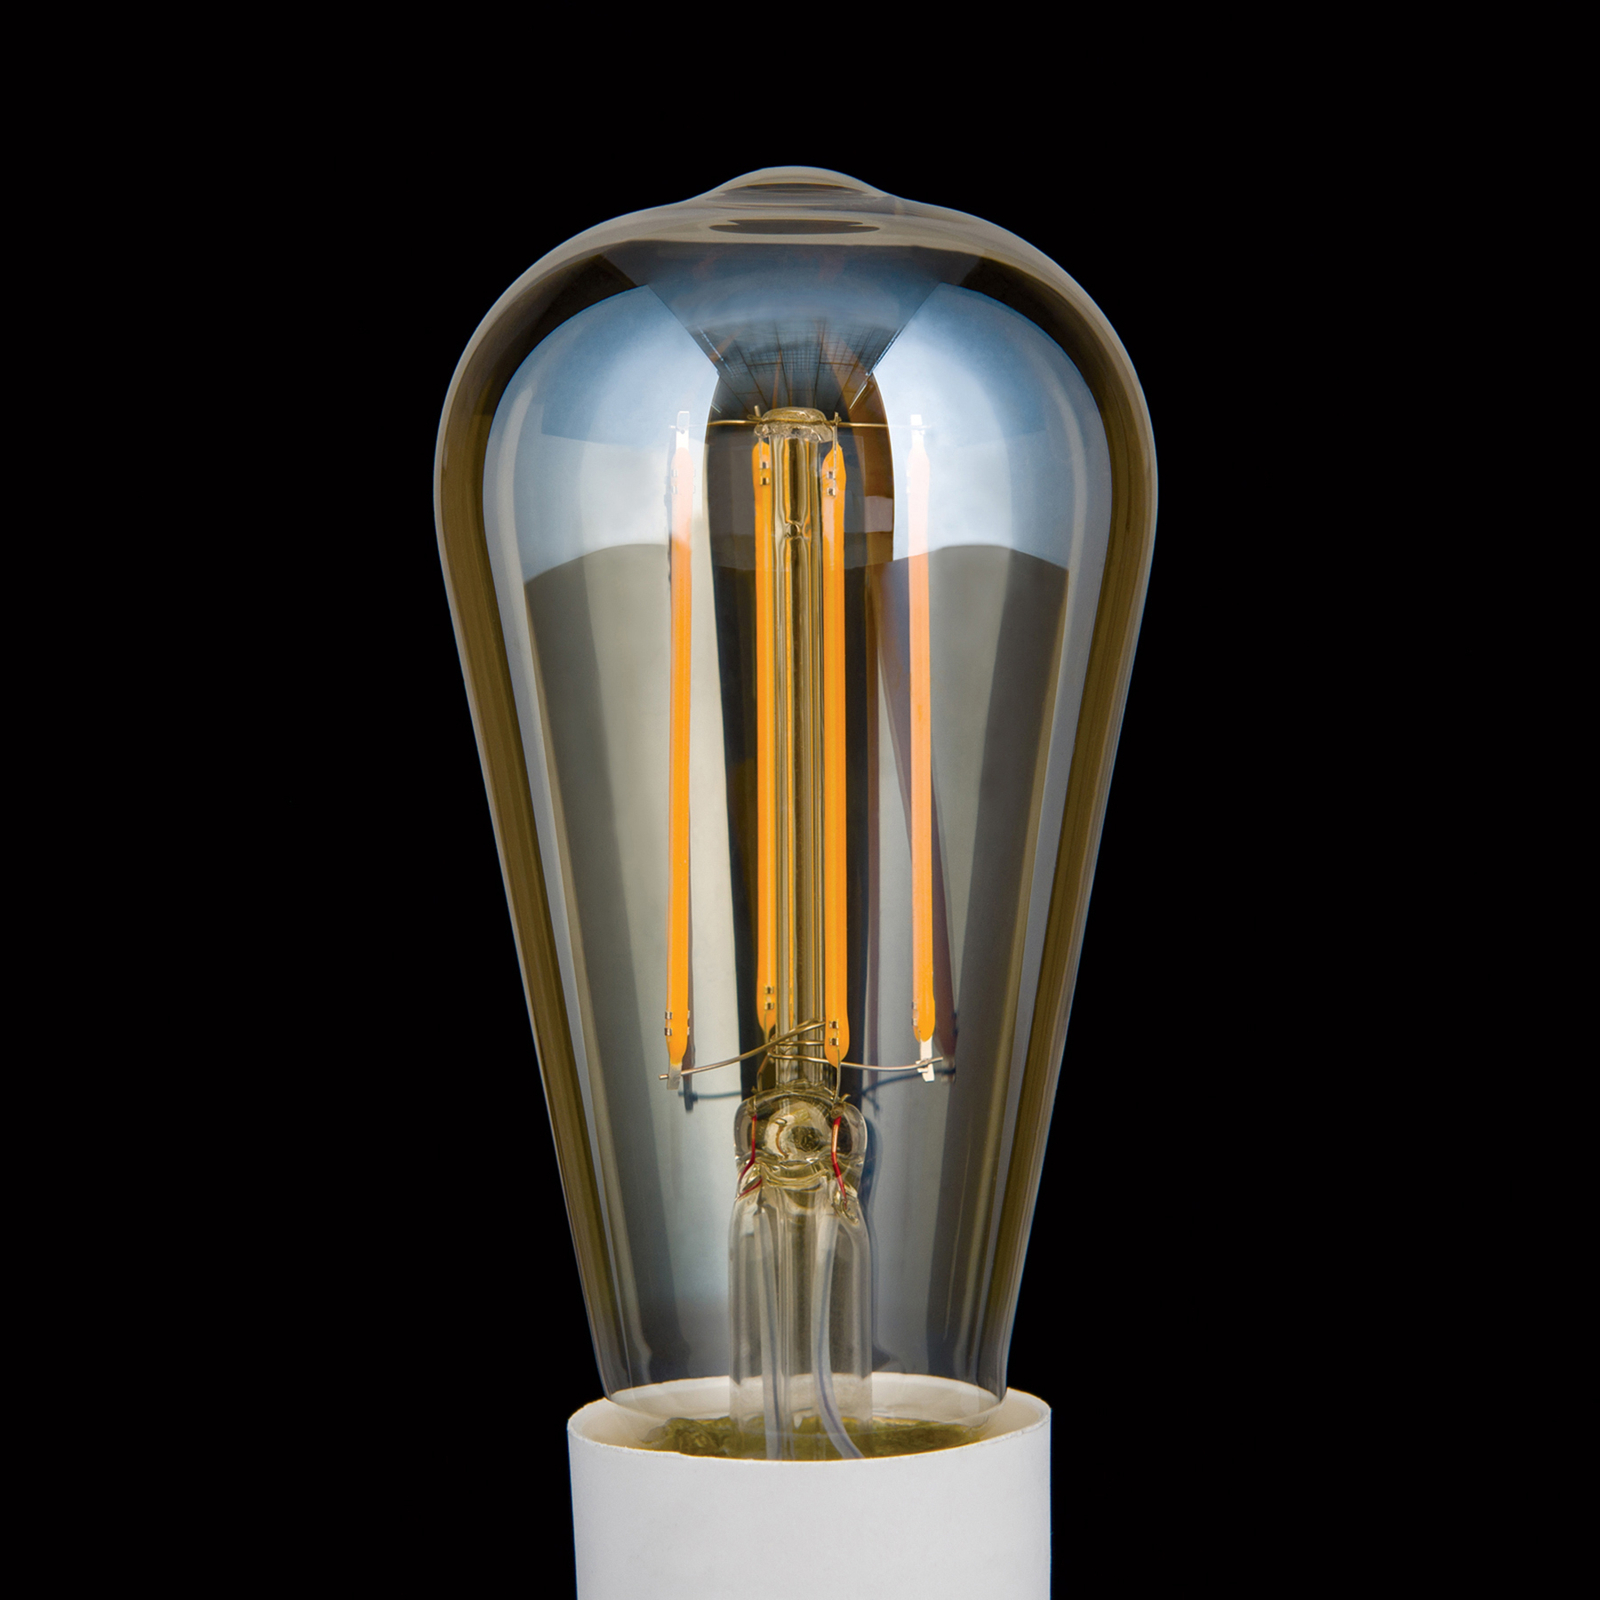 LED-Rustikalampe E27 ST64 6W amber 2.200K dimmbar